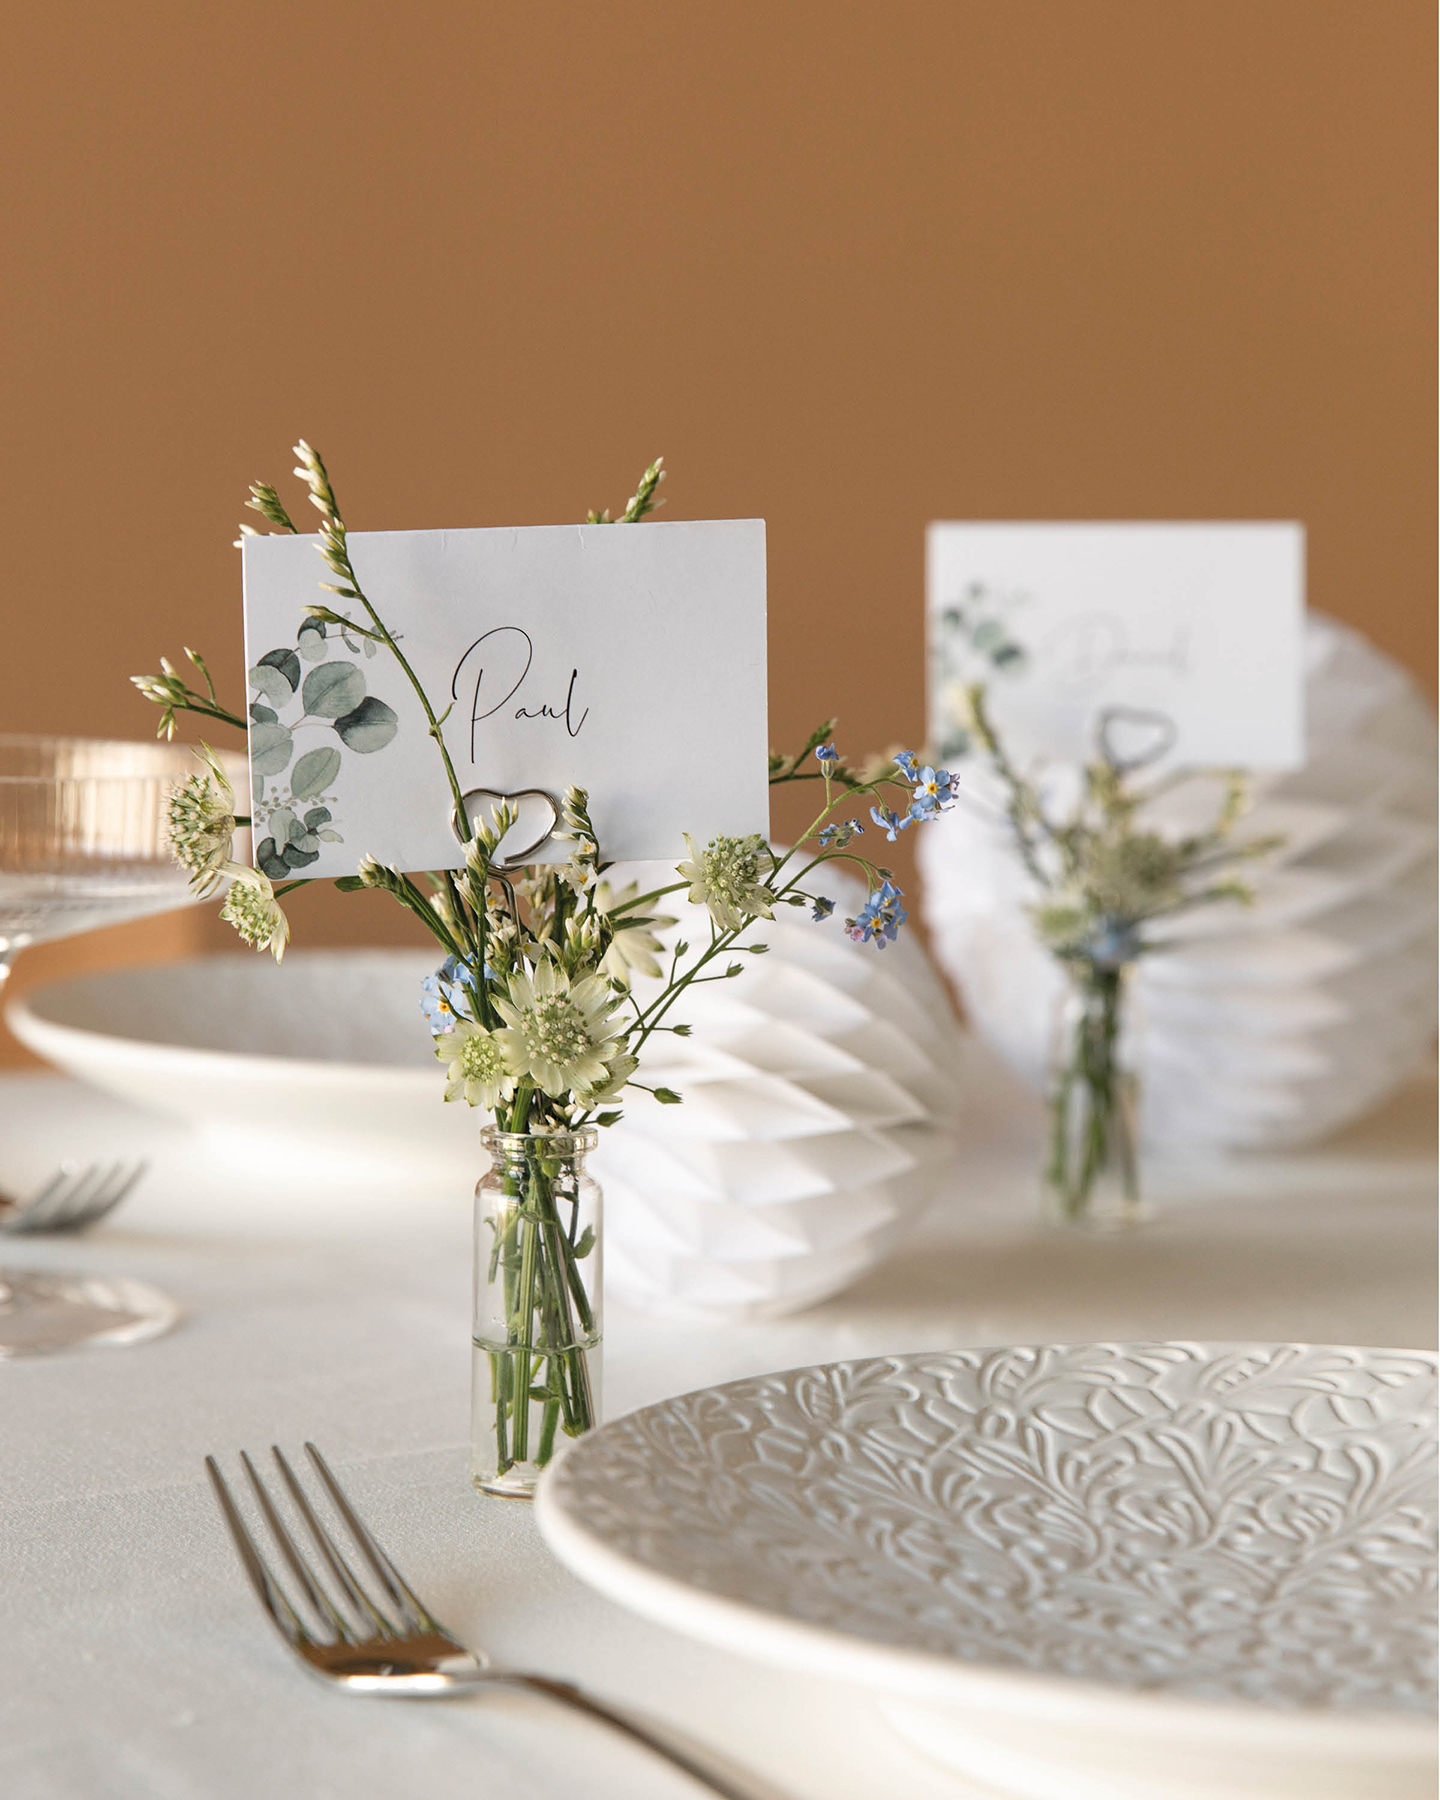 Tischkarten zur Hochzeit dekoriert in kleinen Fläschchen gefüllt mit Blümchen dekoriert auf der Hochzeitstafel.